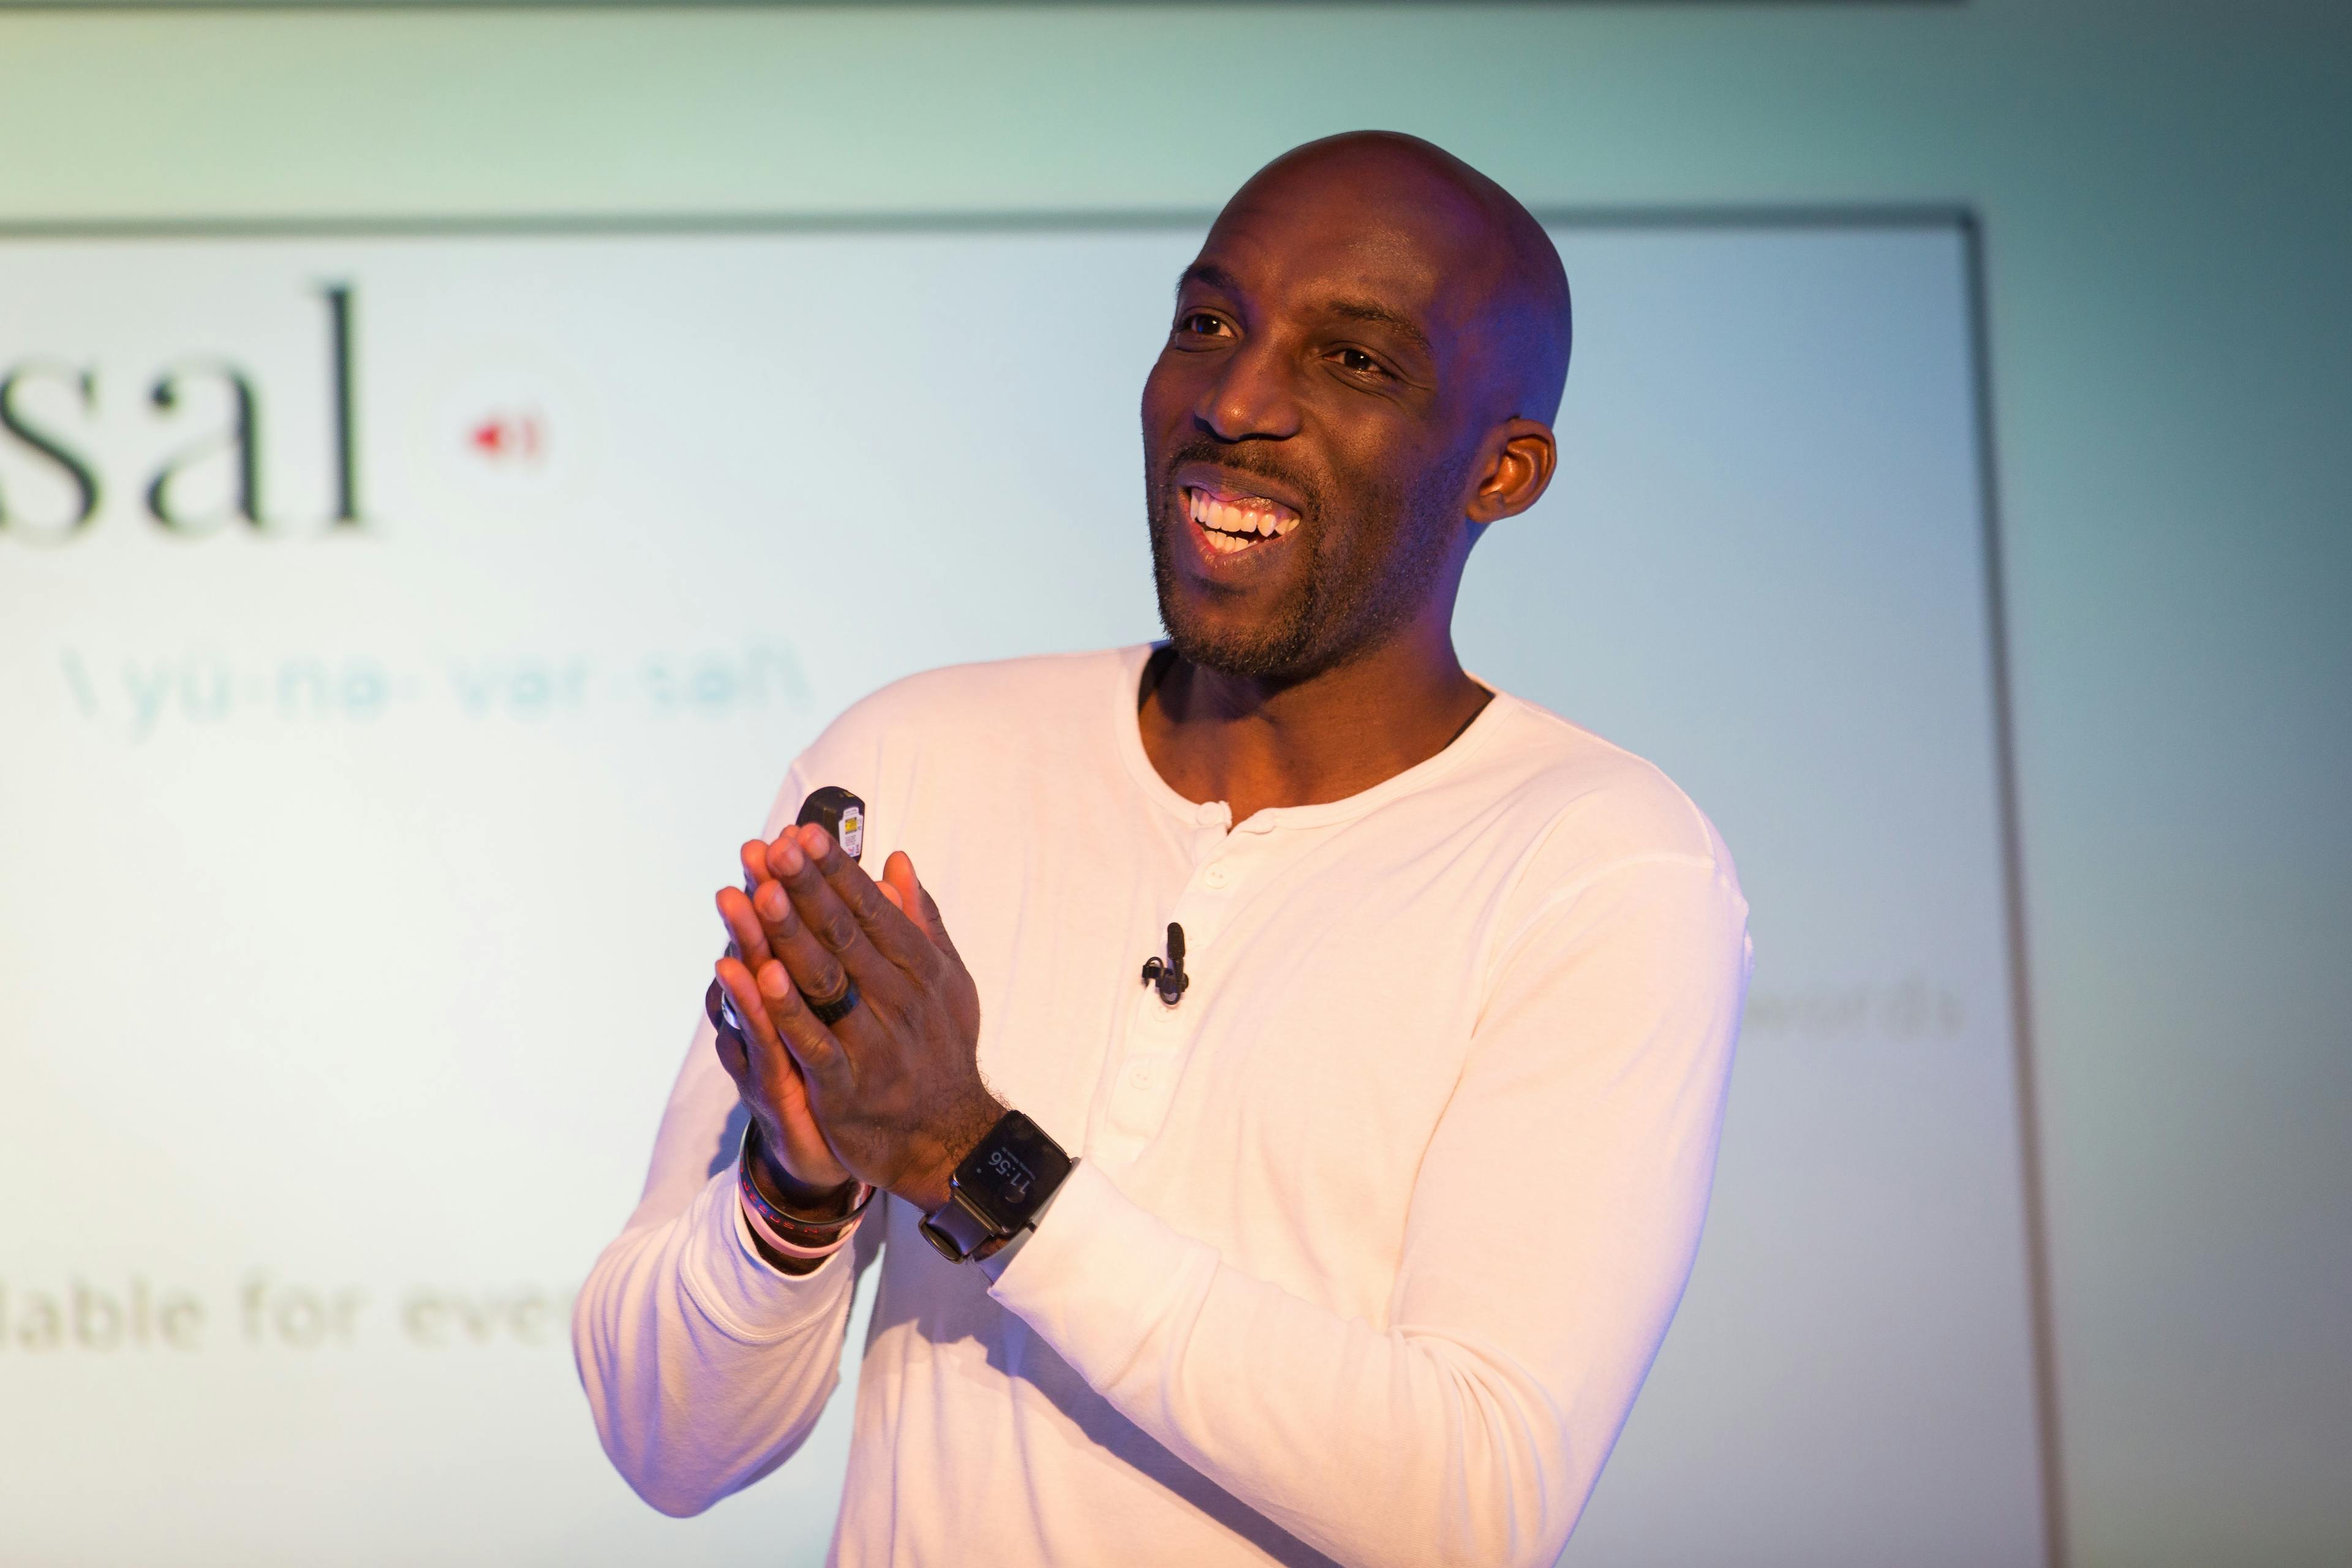 Ben Ilegbodu speaking at Render Conf 2017